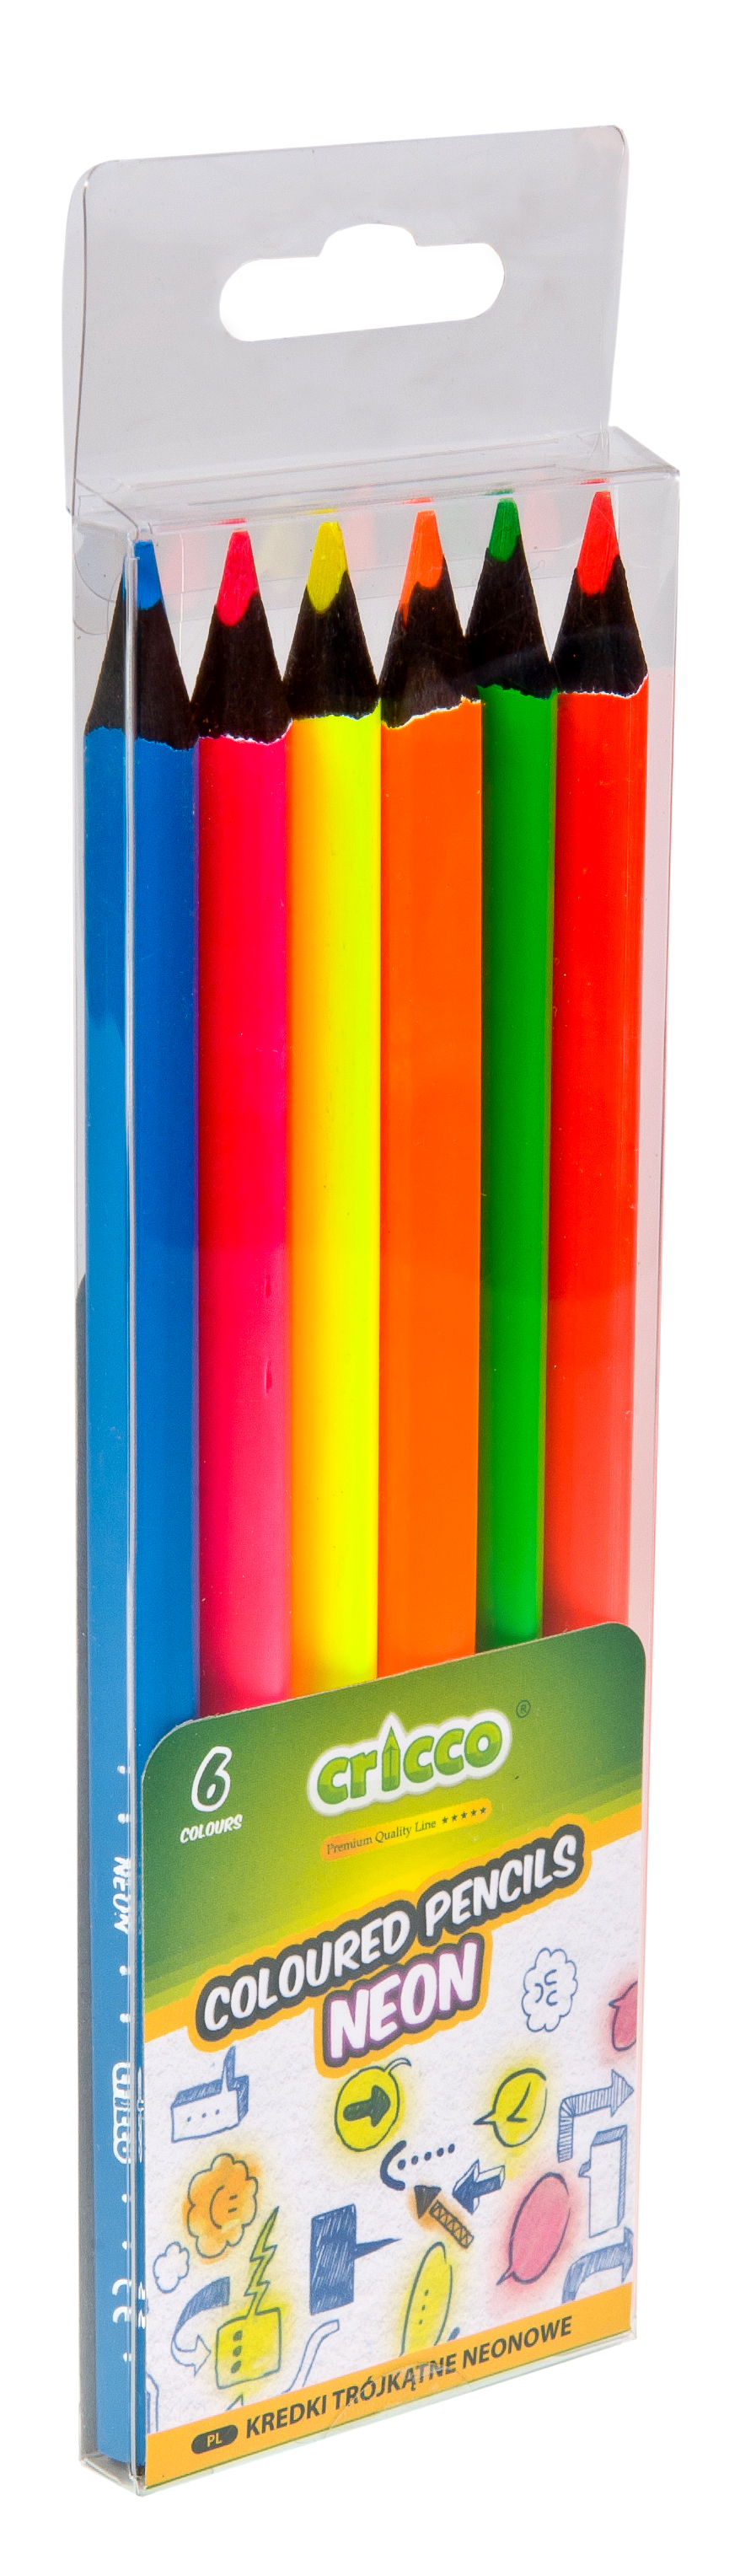 Cricco - coloured pencil neon 